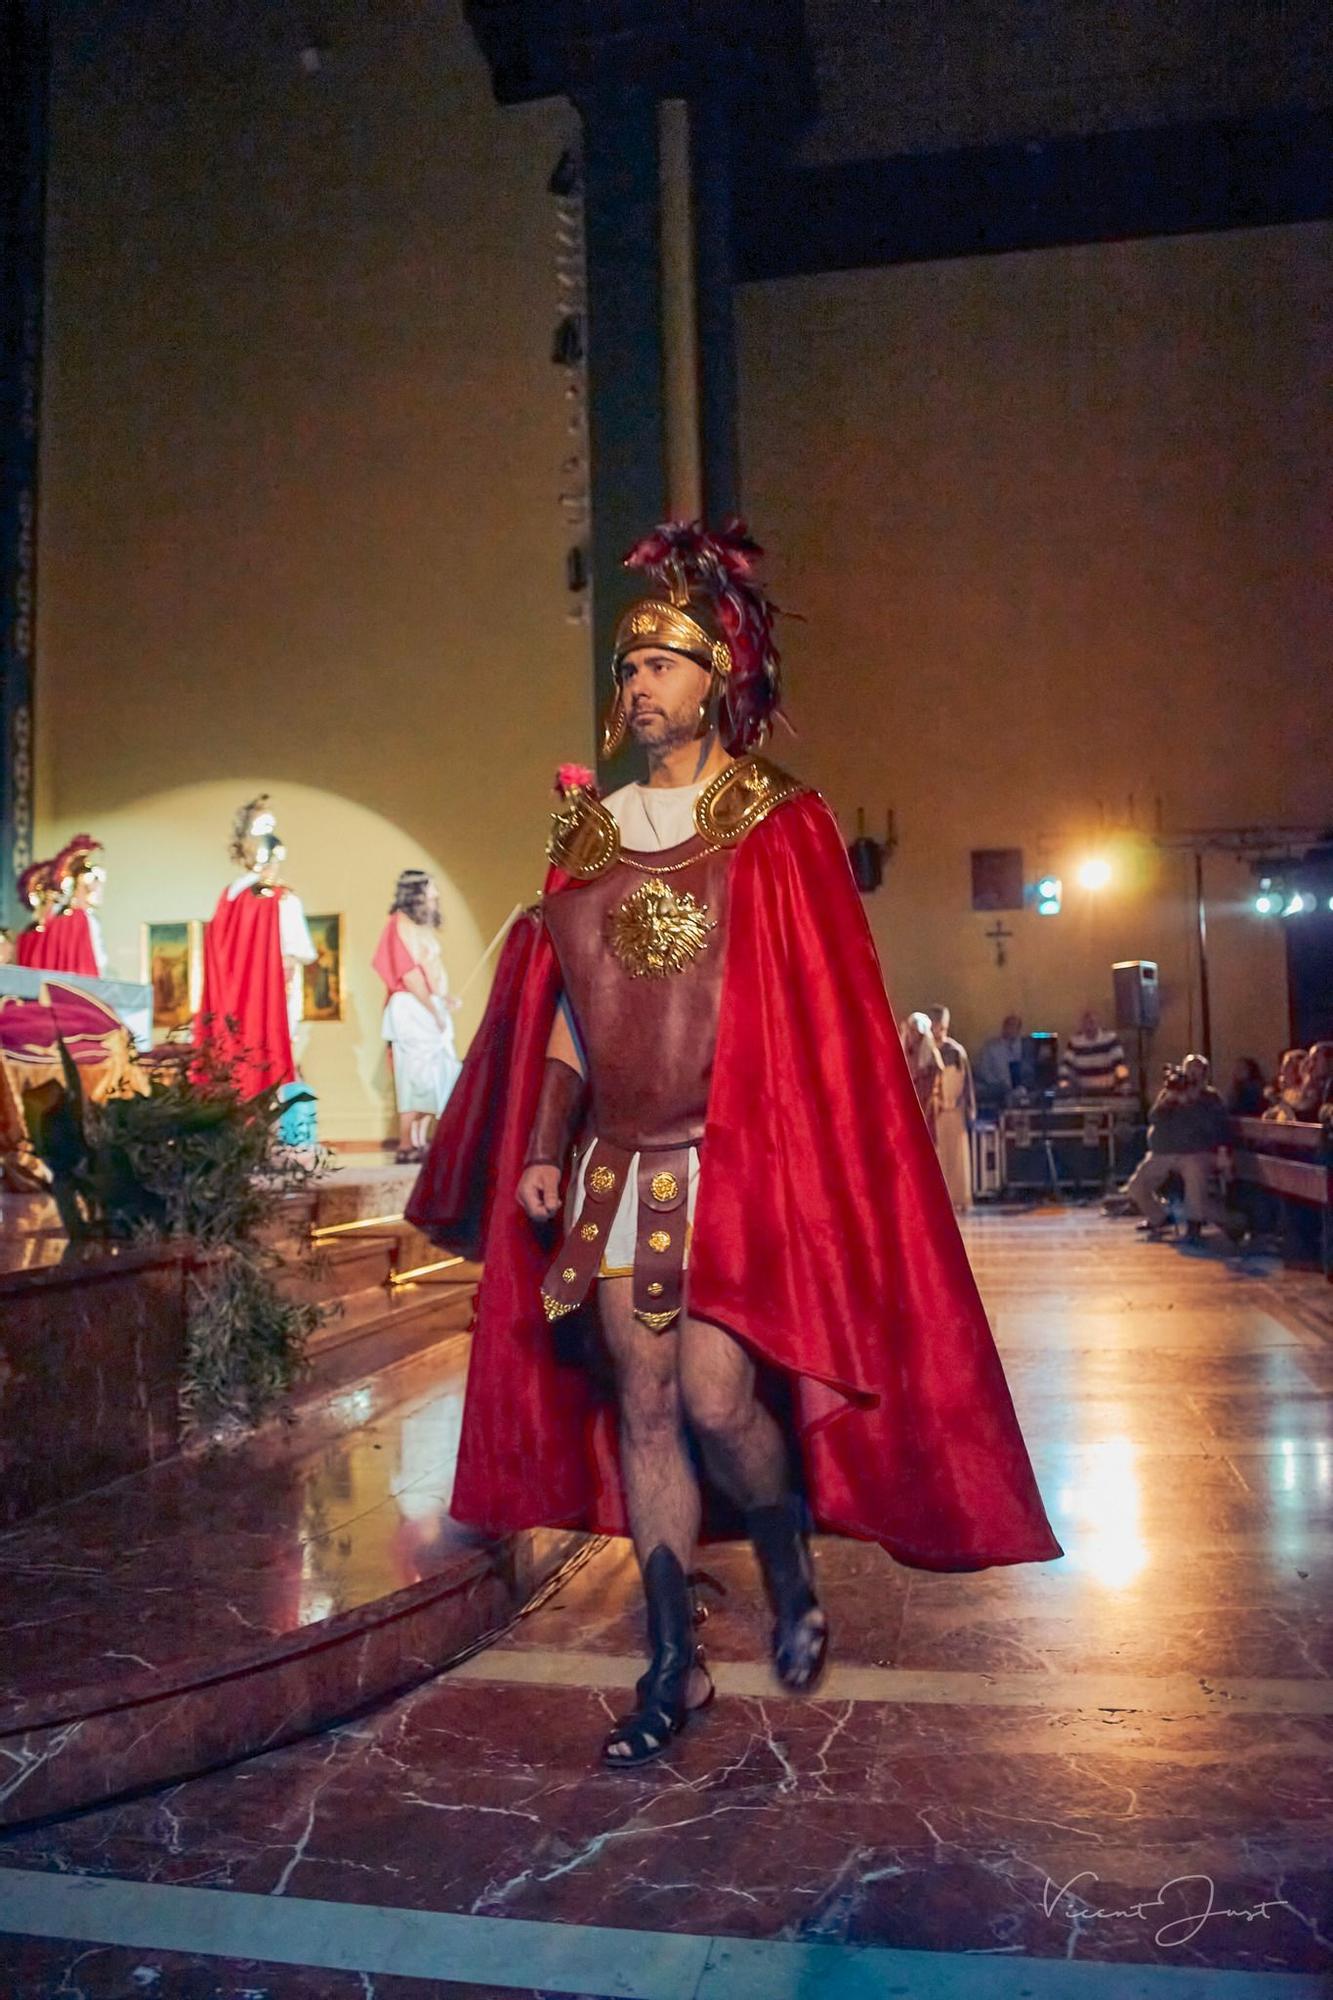 El jucio a Jesús en la iglesia de Sant Josep de Gandia